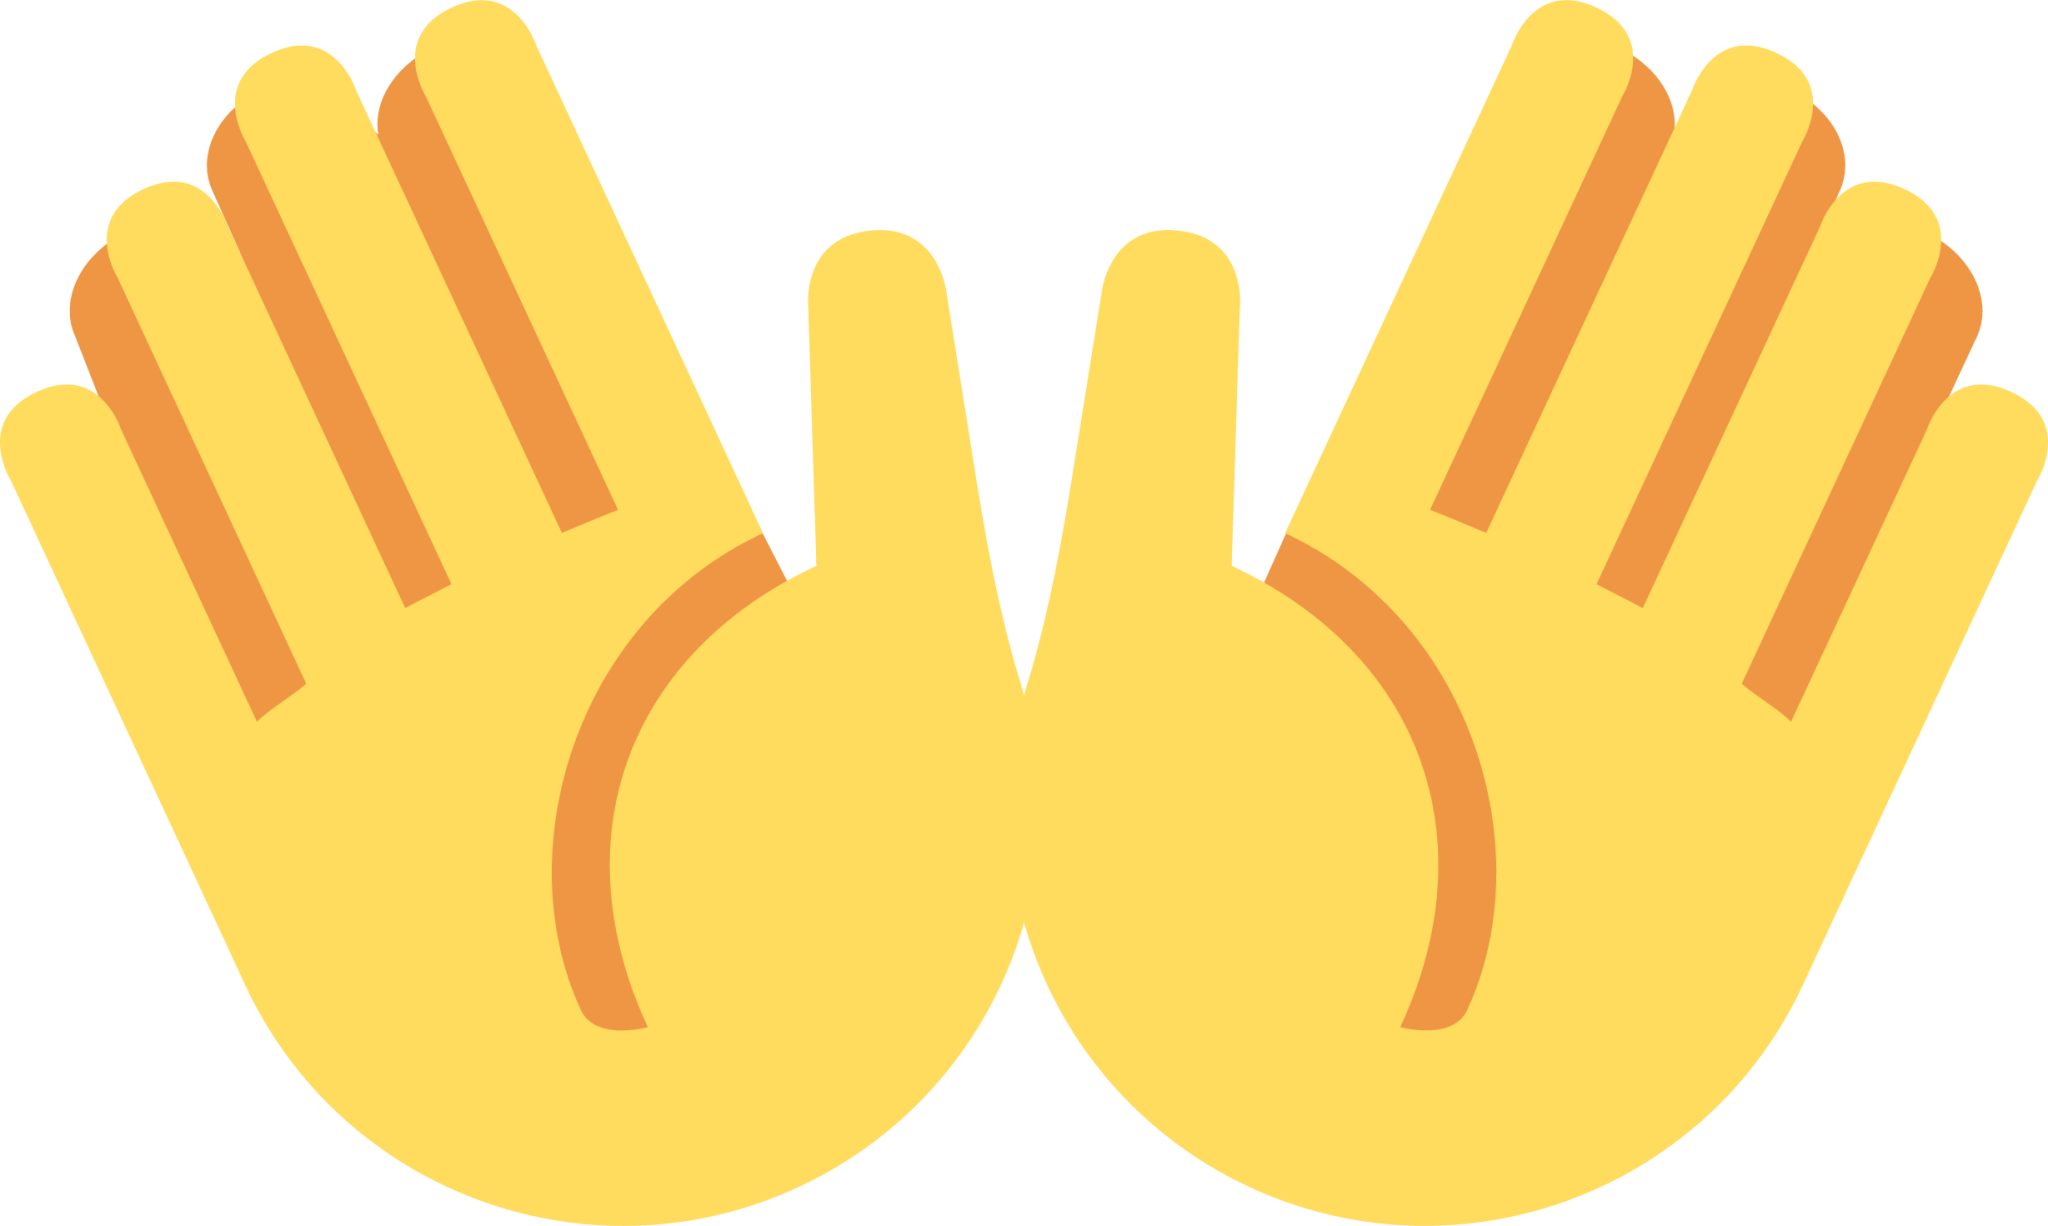 open hands sign emoji